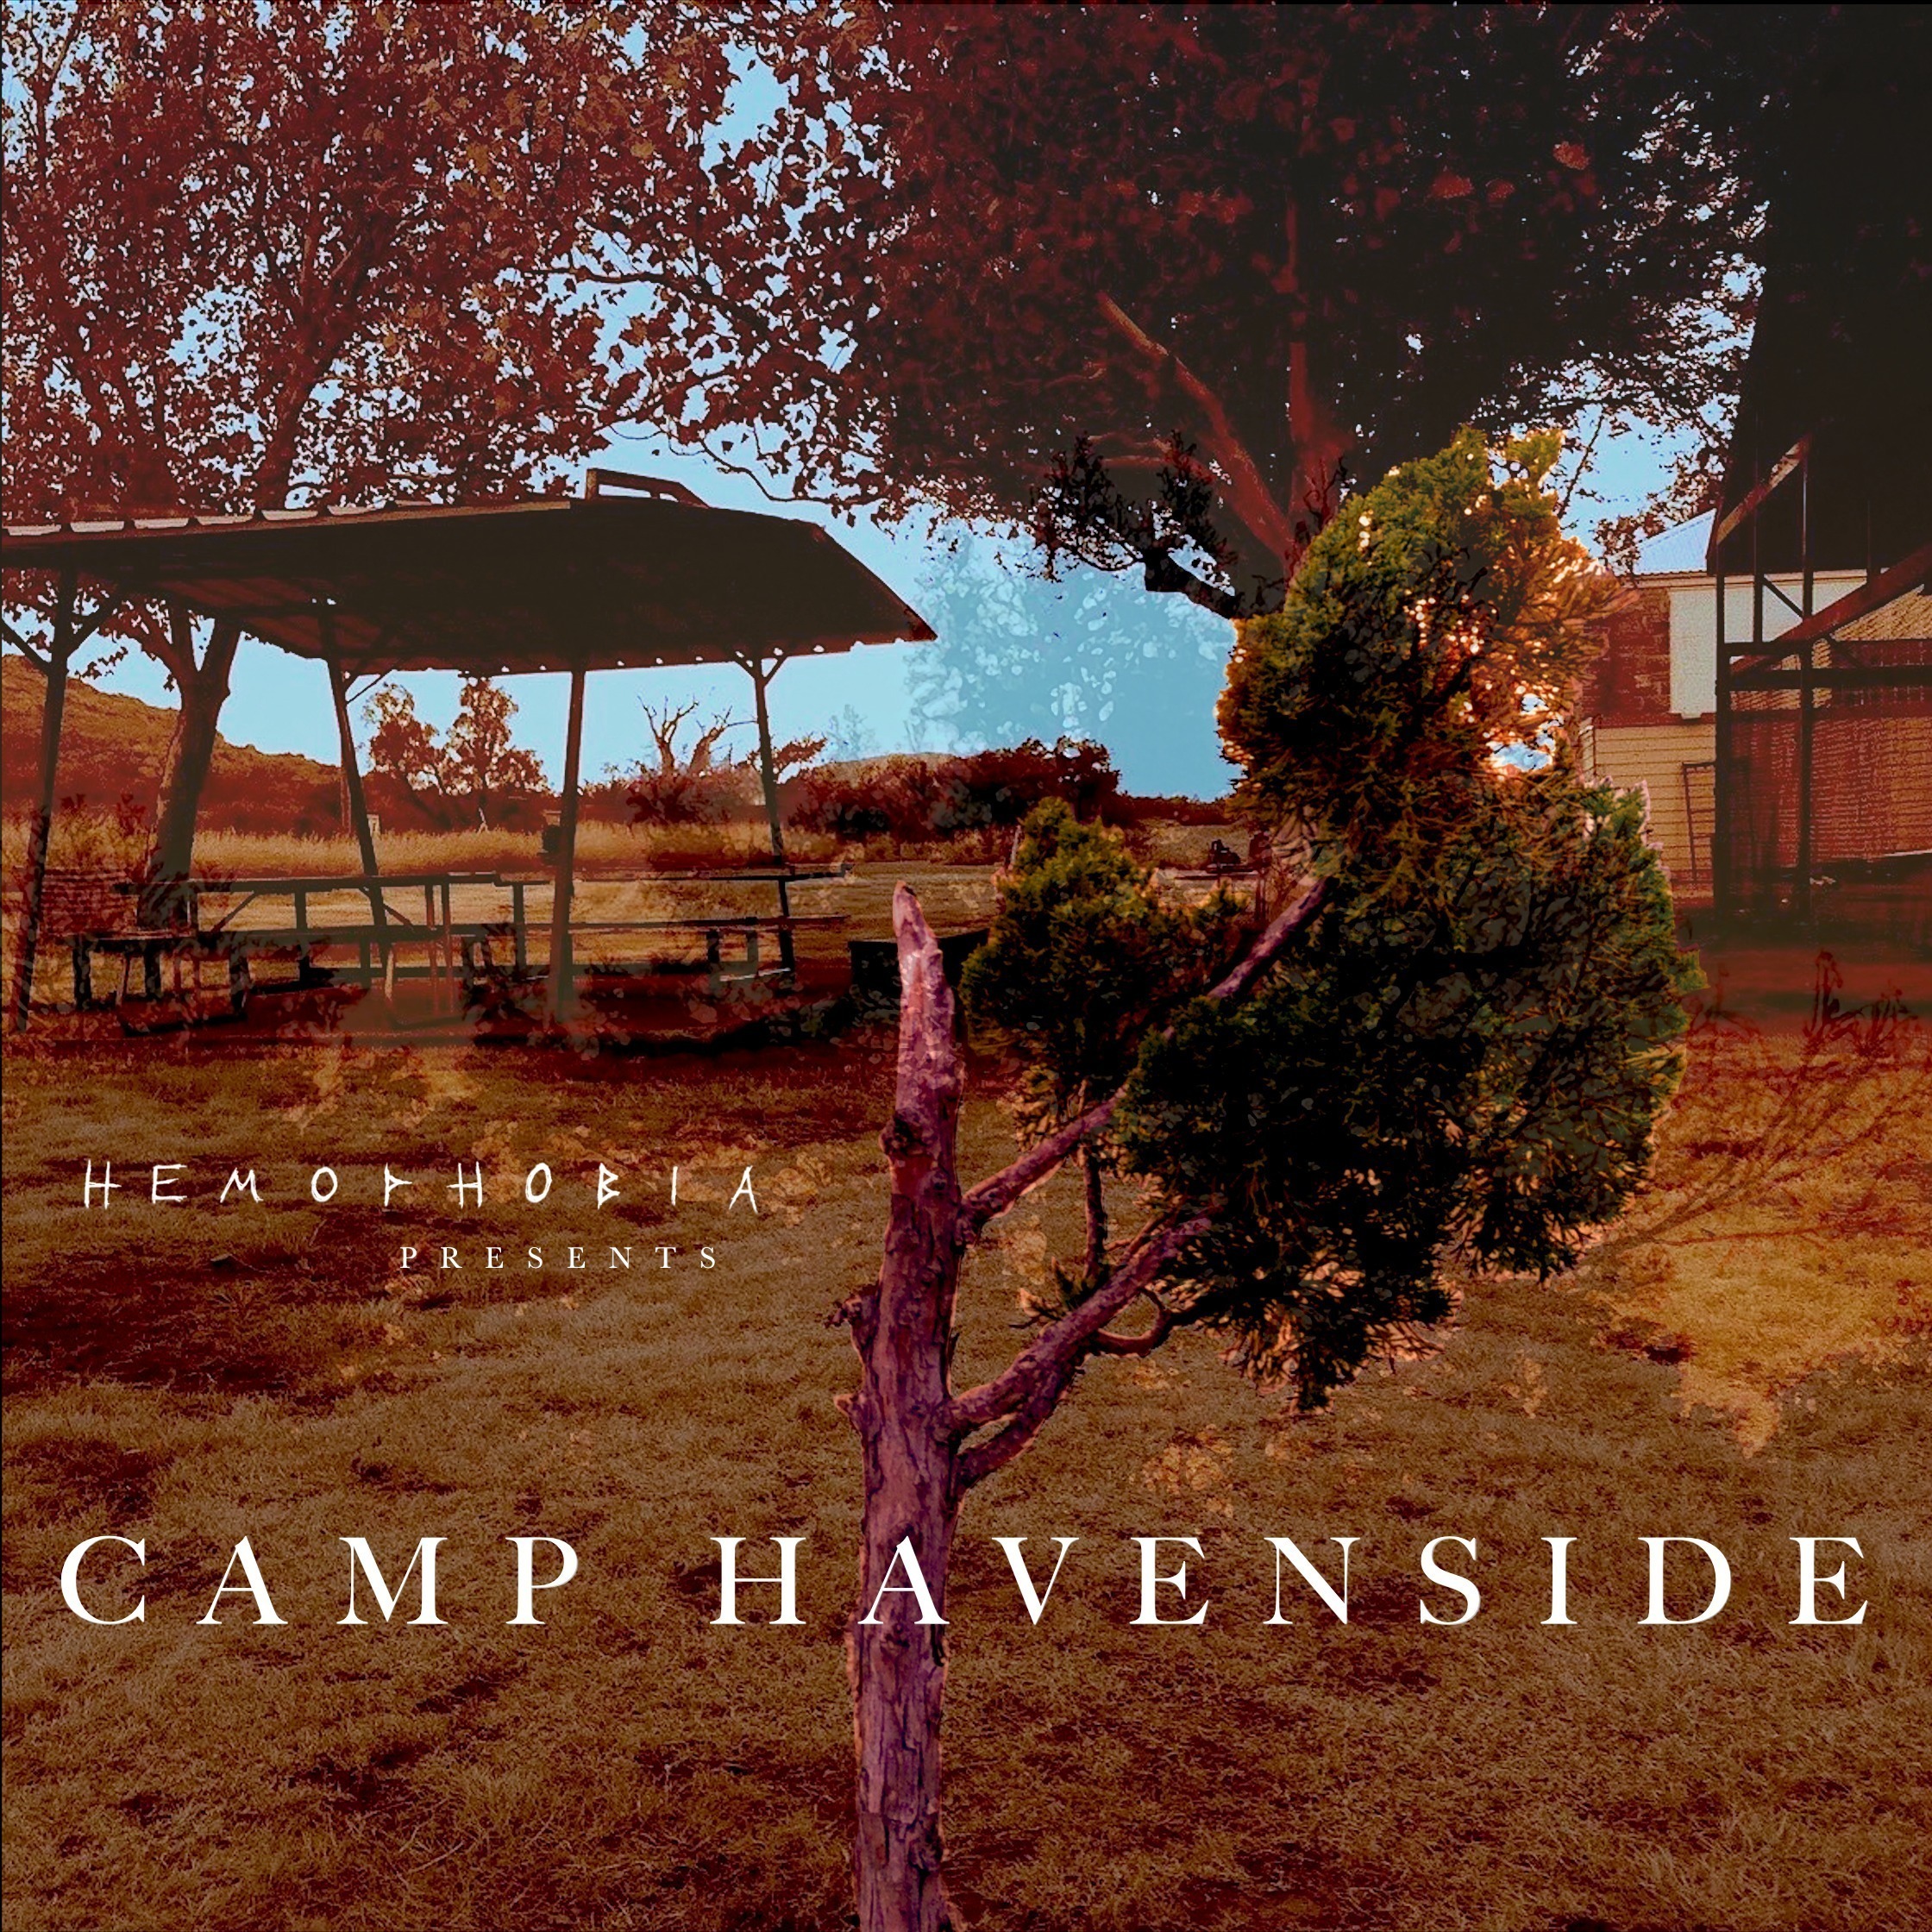 Camp Havenside – Sunday